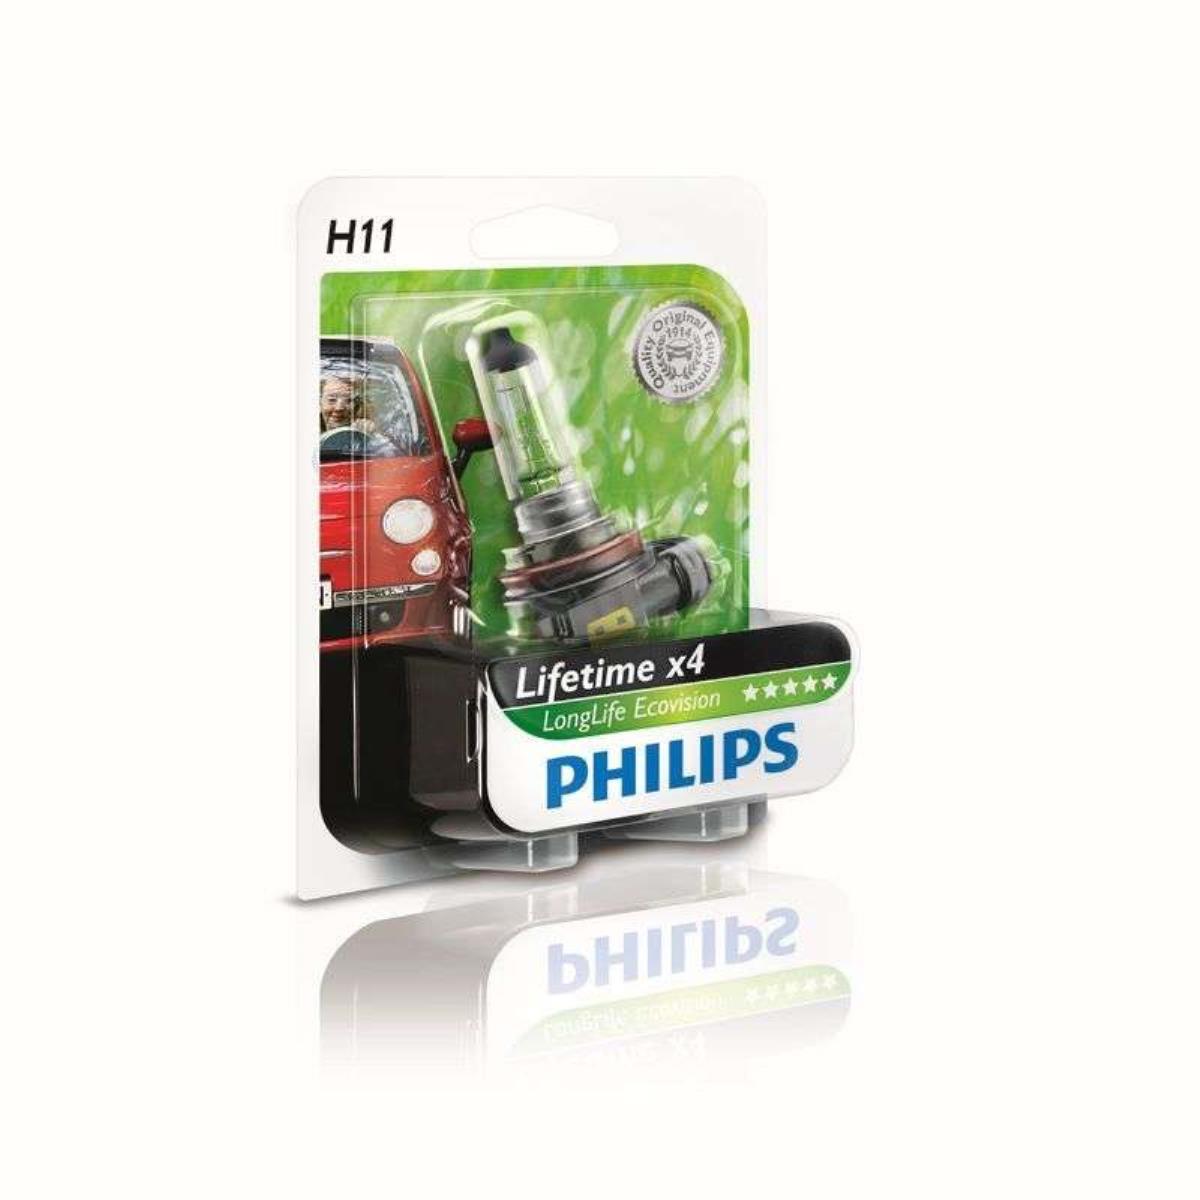 Philips H11 LongerLife ECOVision 12V 55W PGj19-2 Blister Lampe Birne